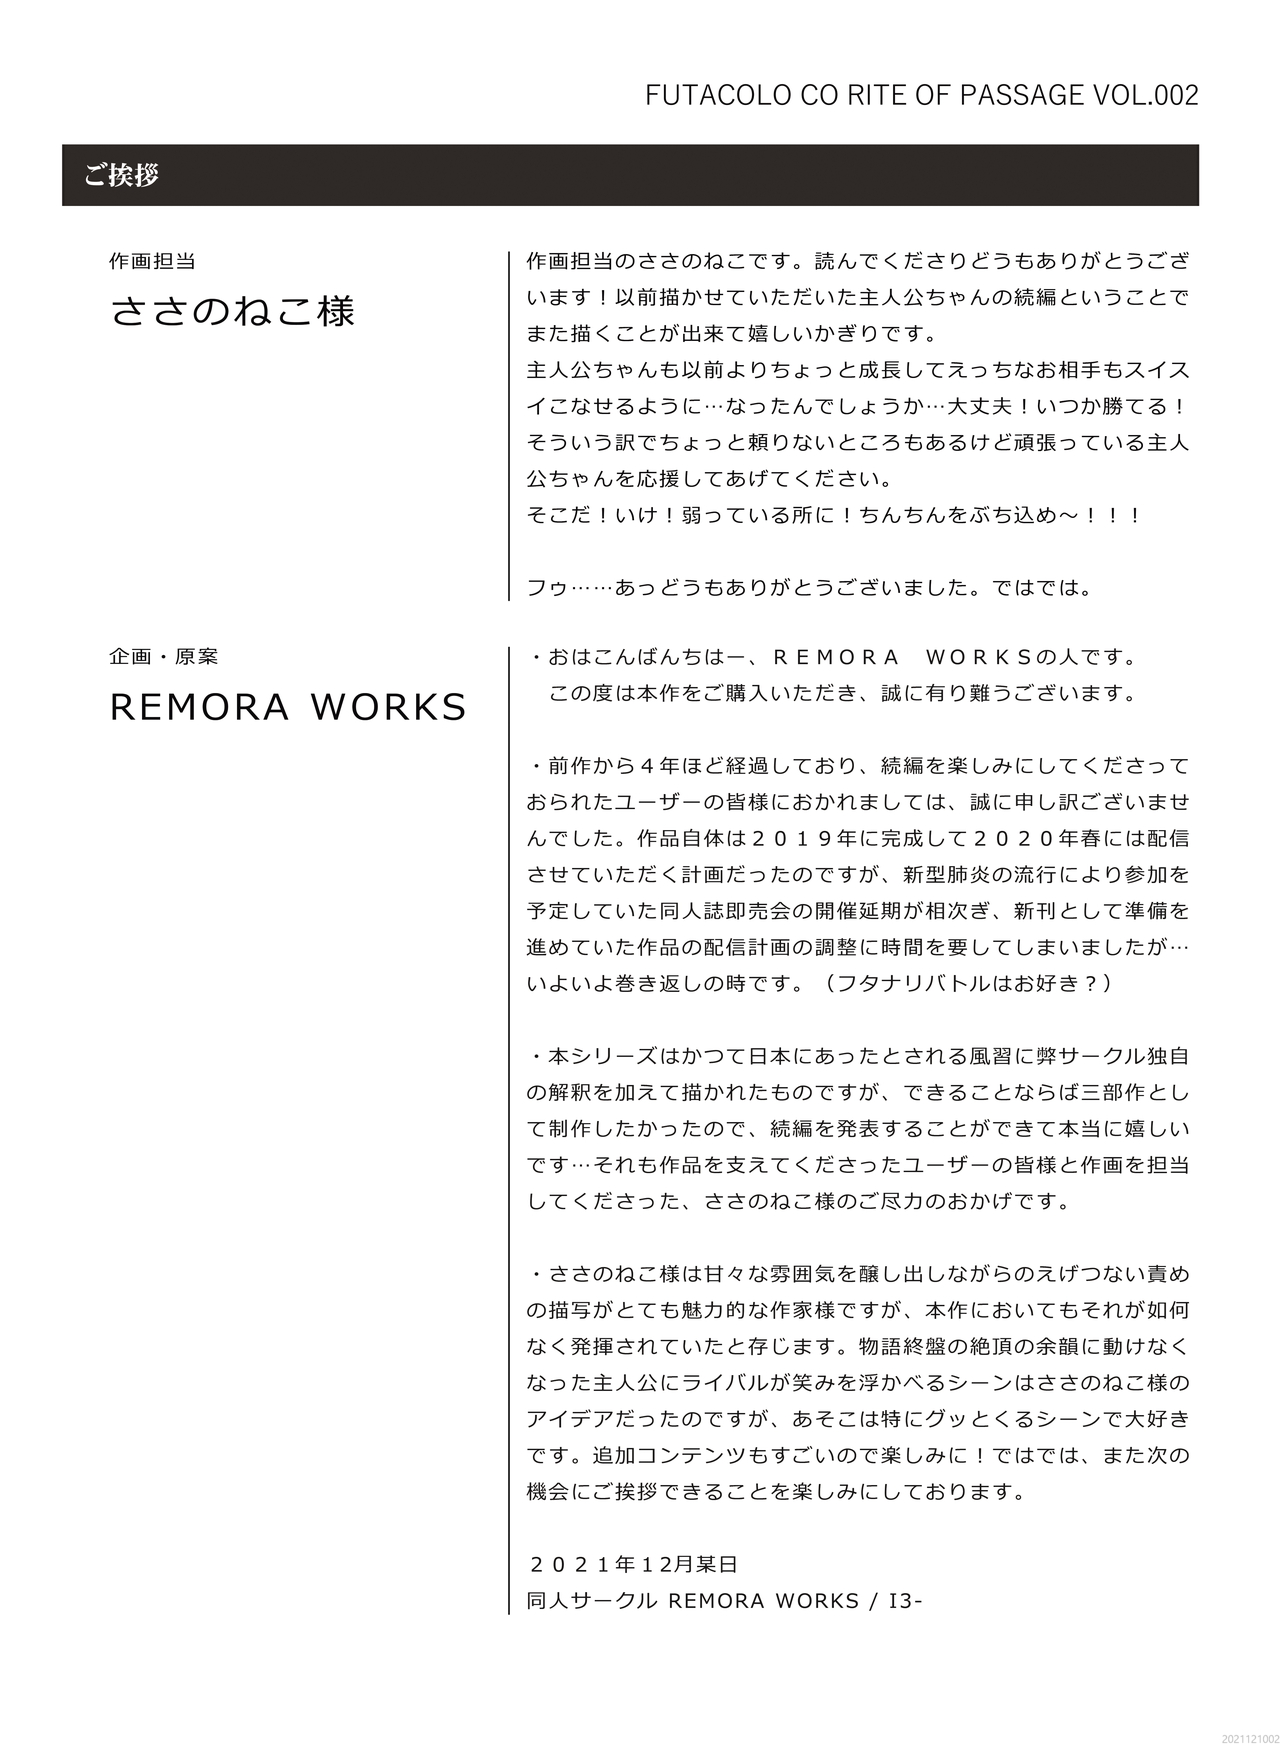 [REMORA WORKS (ささのねこ)] FUTACOLO CO -RITE OF PASSAGE- Vol.002